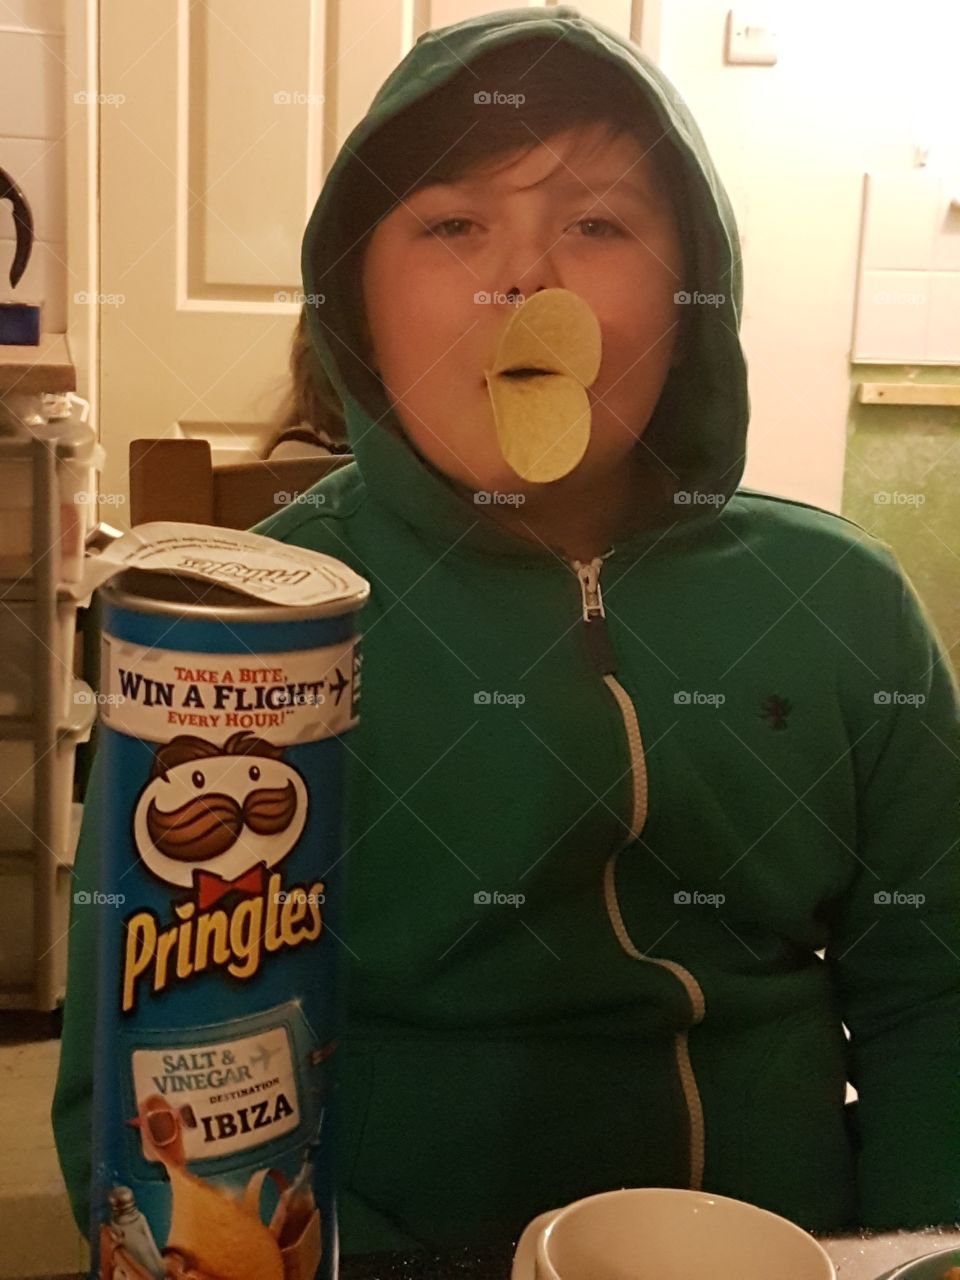 Fun with Pringles